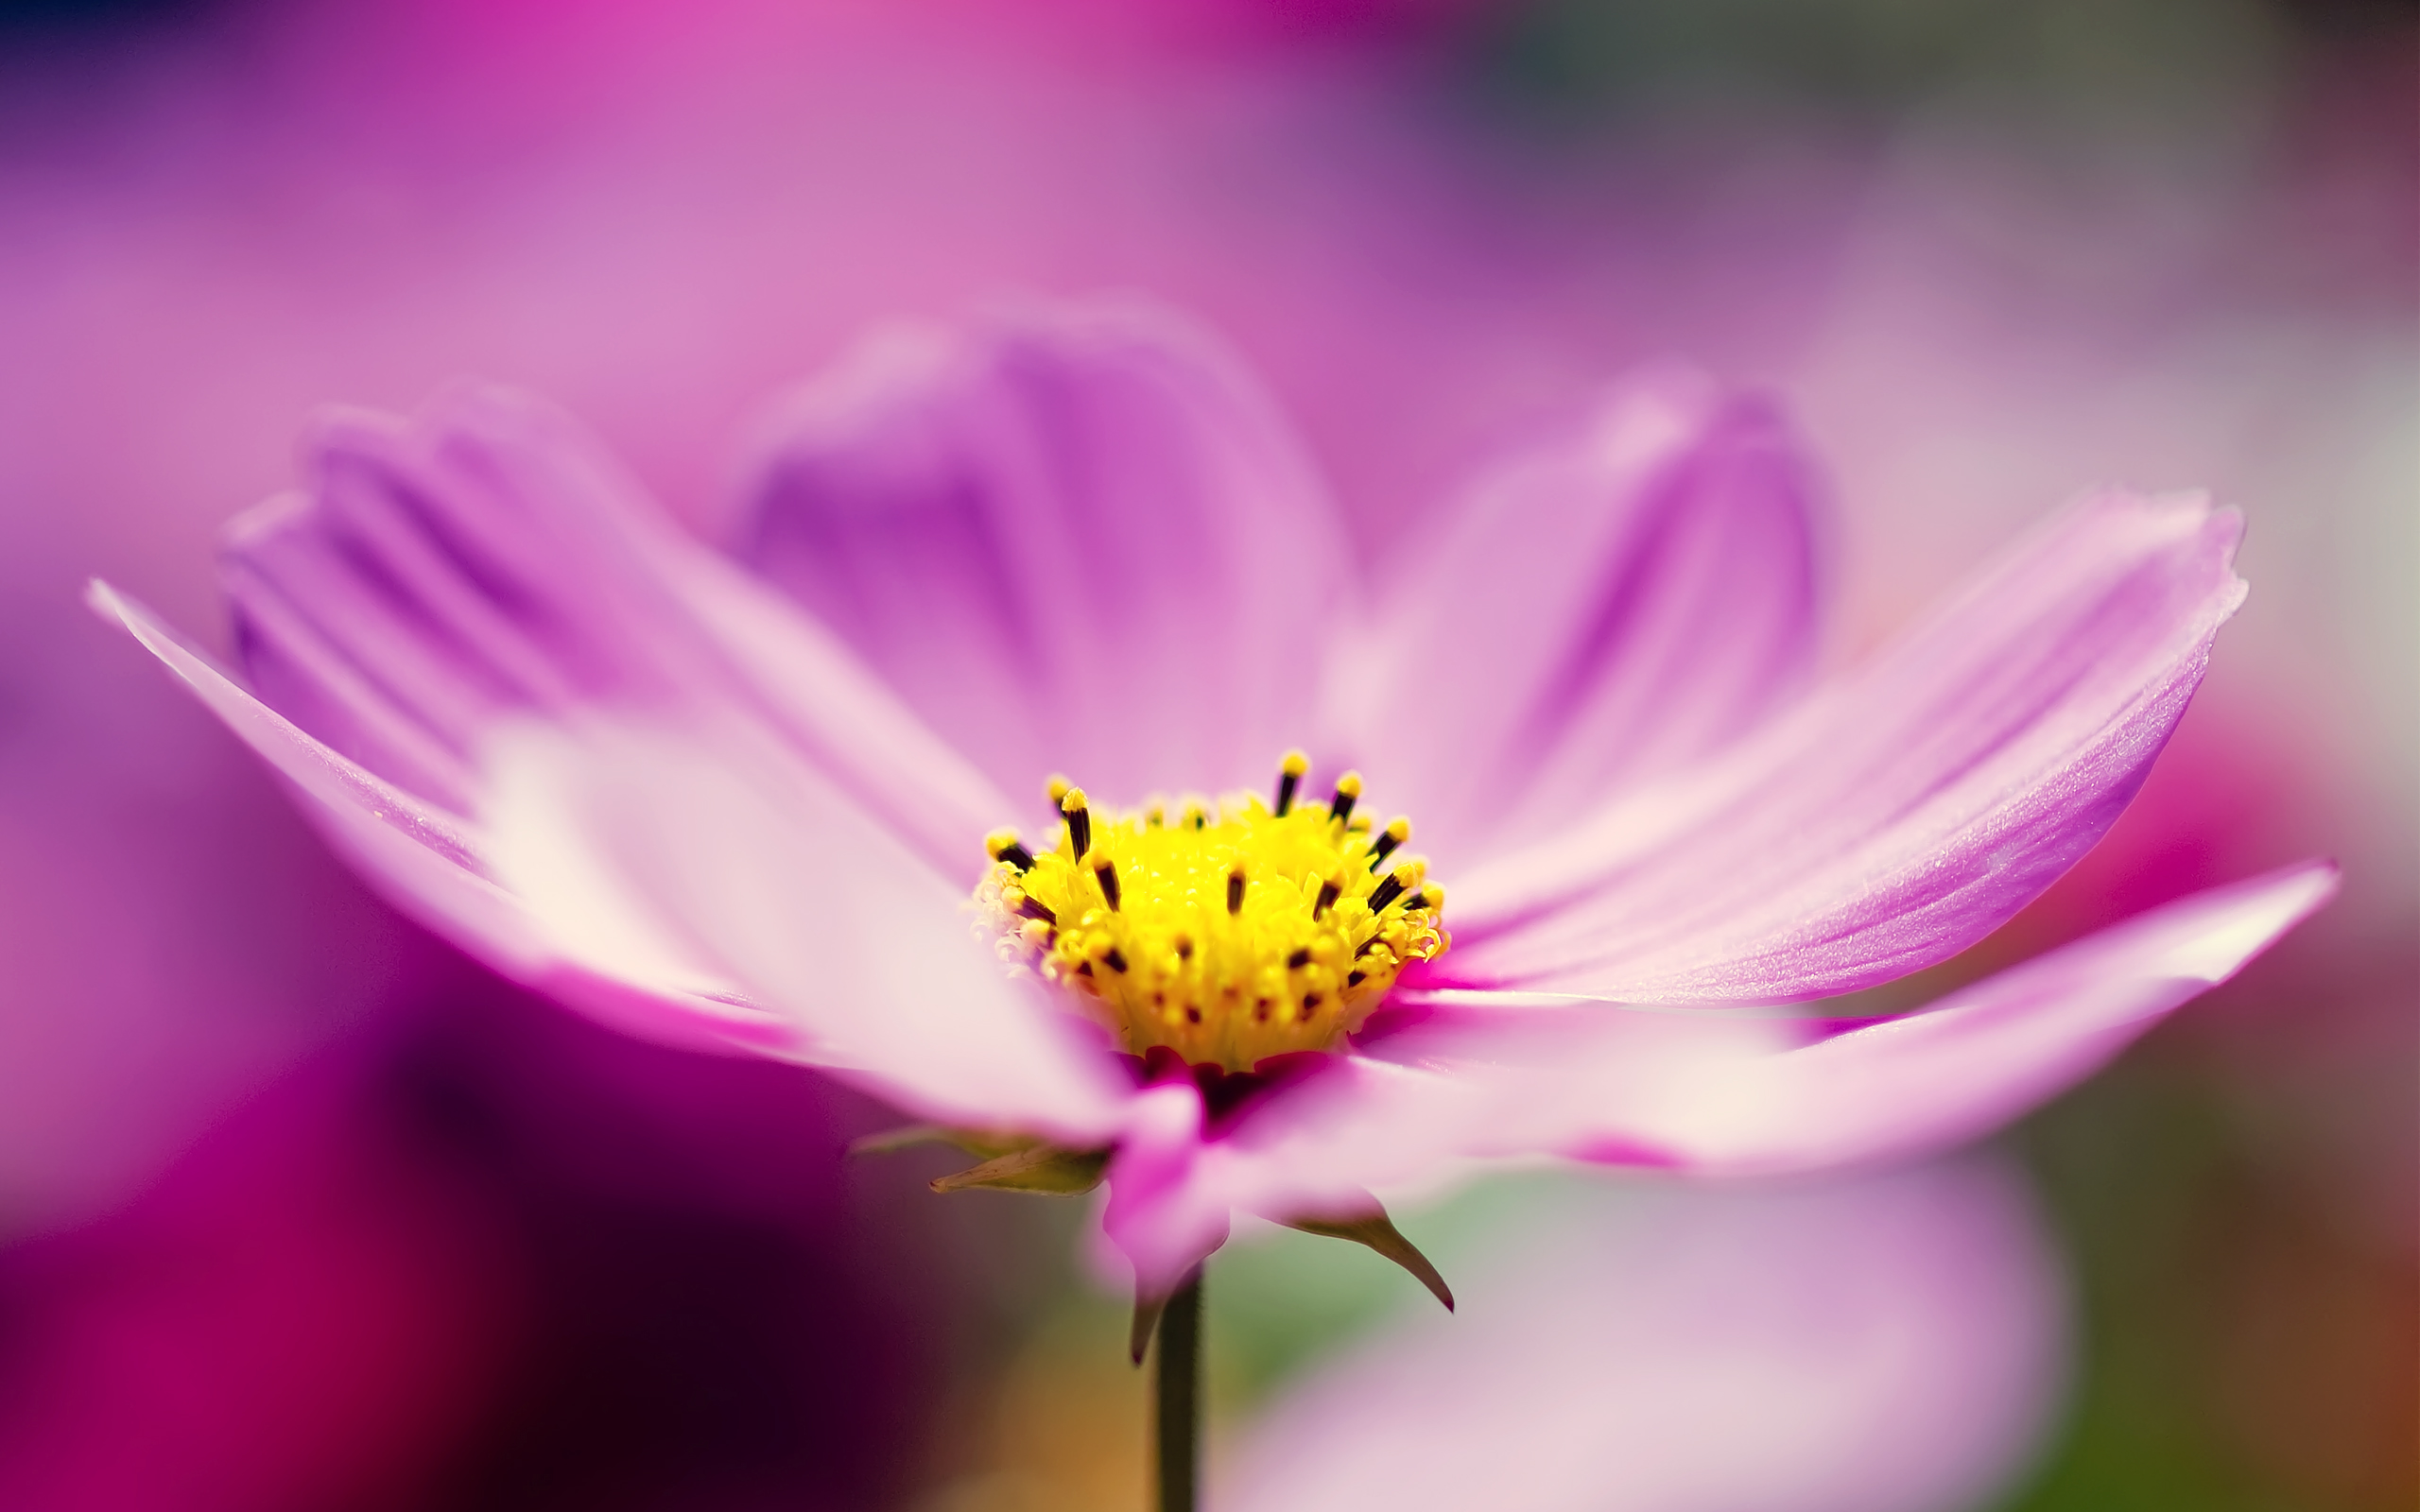 Purple Cosmos là loài hoa đẹp và nổi tiếng với màu tím tuyệt đẹp. Những bông hoa tỏa sáng trên nền lá xanh làm cho cảnh quan hoàn hảo hơn. Hãy xem hình ảnh để chiêm ngưỡng vẻ đẹp của hoa cosmos màu tím rực rỡ này.